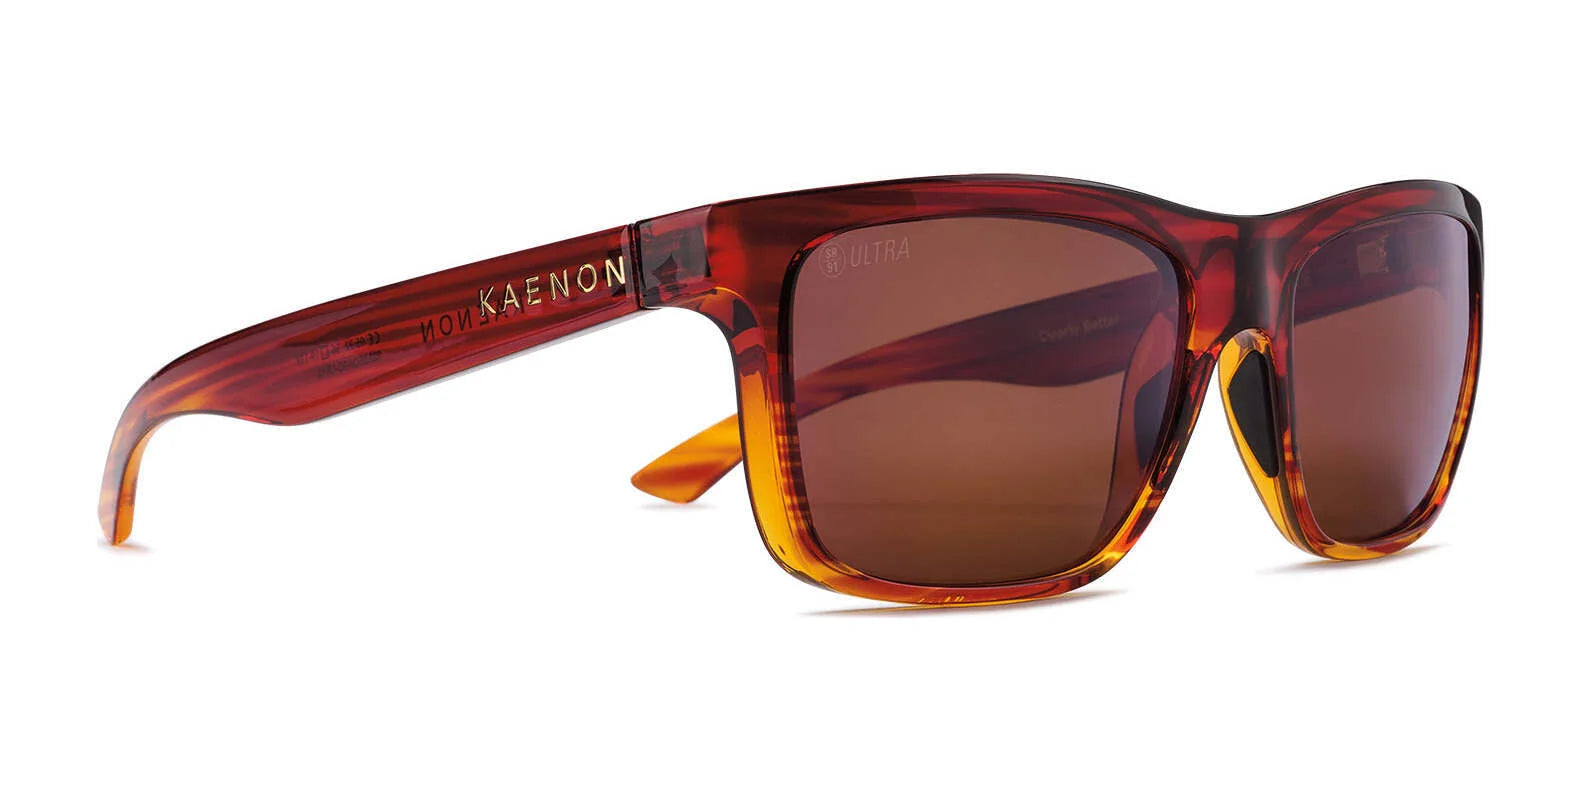 Kaenon CLARKE Sunglasses 175 / Sequoia